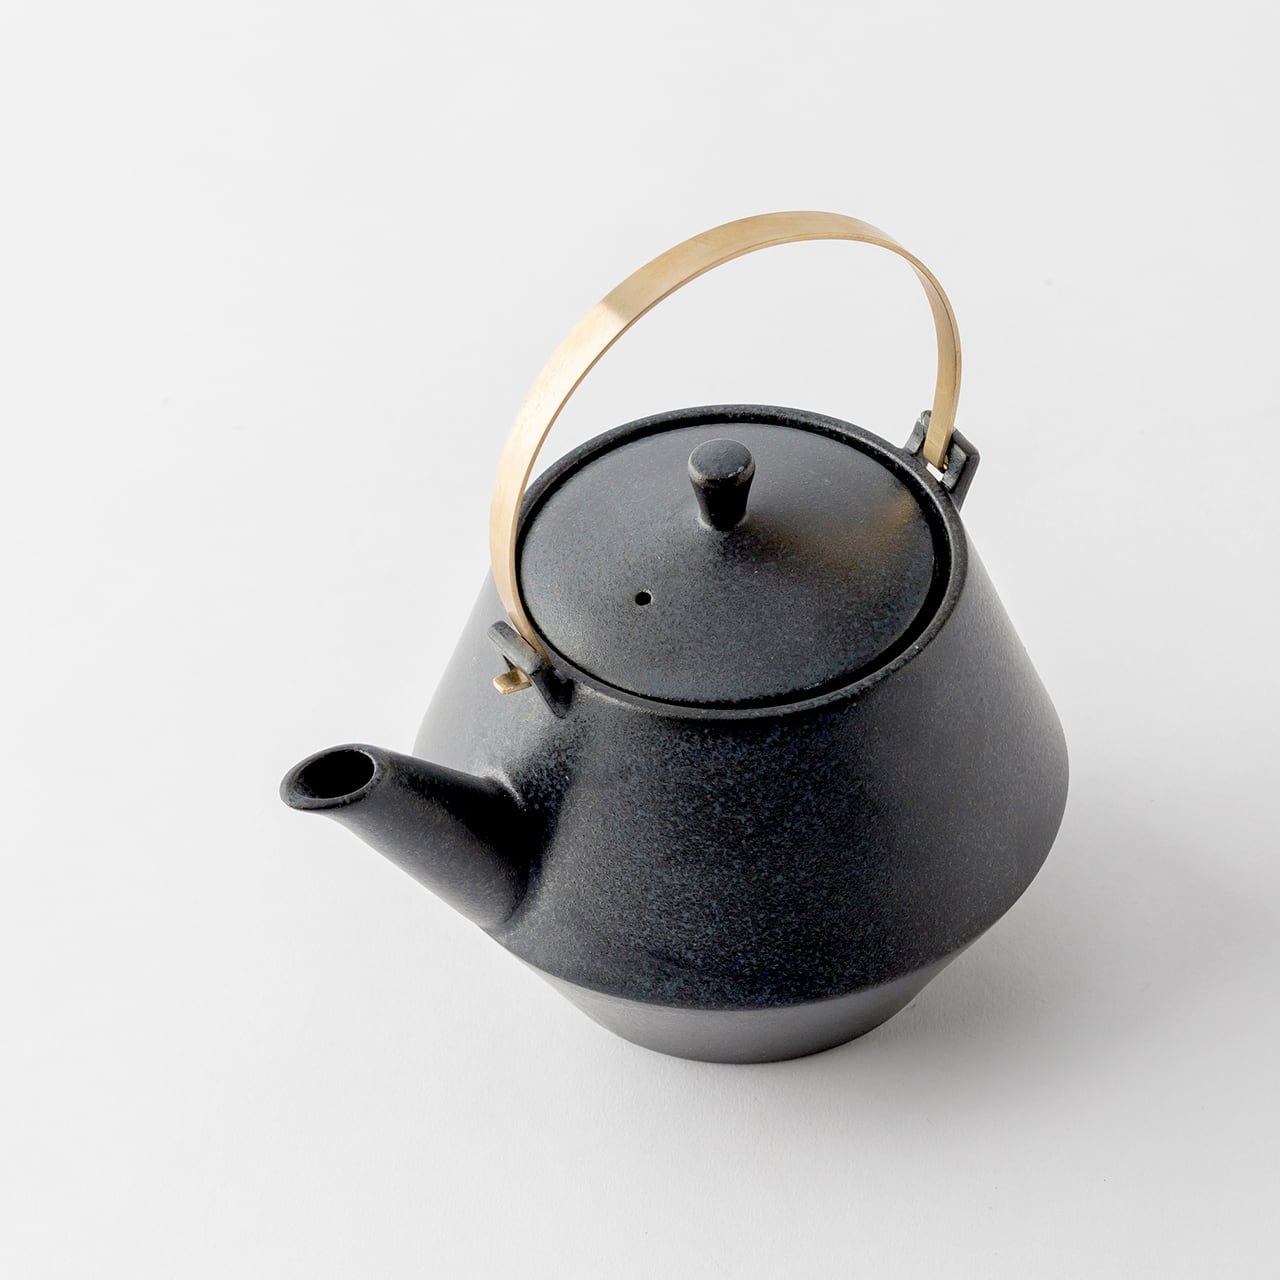 Earthenware Teapot Frustum with Brass Handle - Black